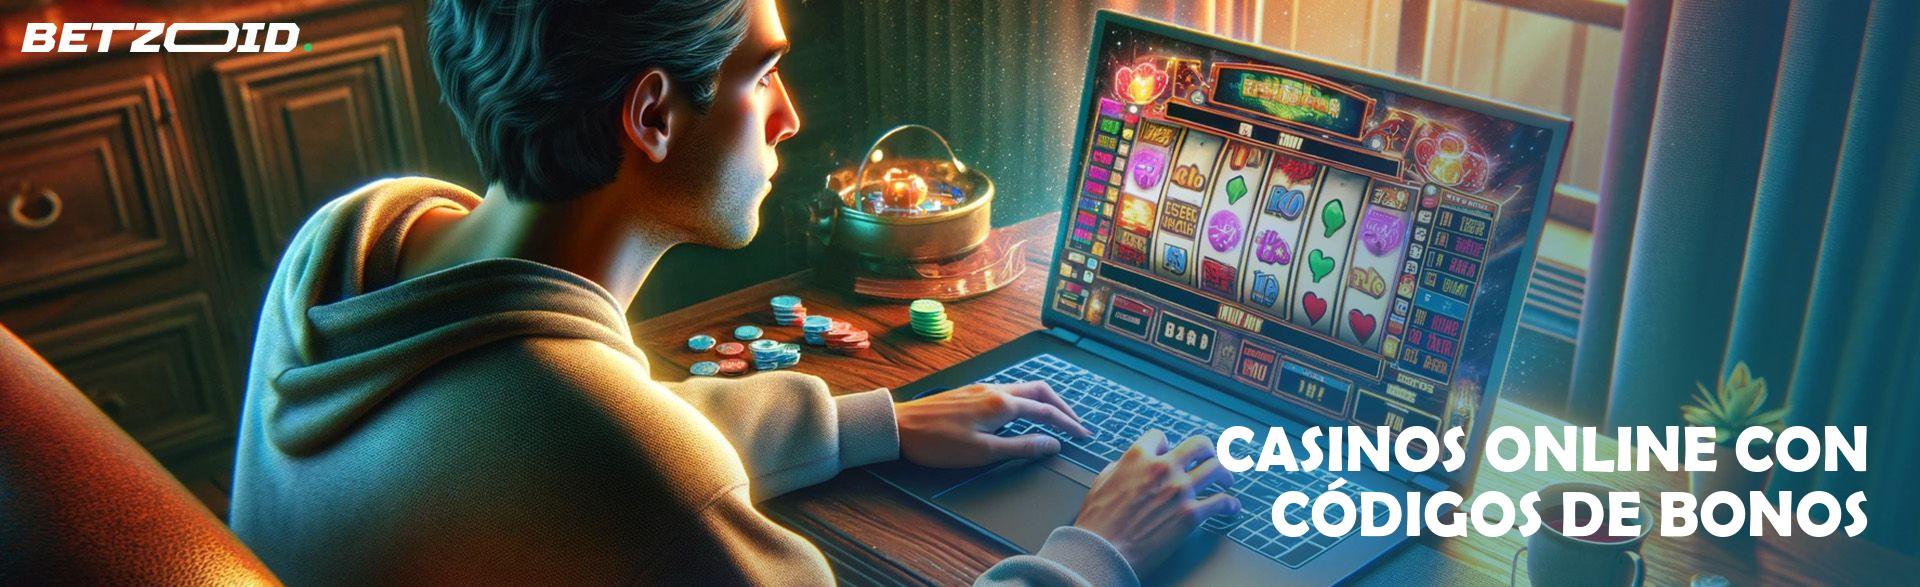 Casinos Online con Códigos de Bonos.